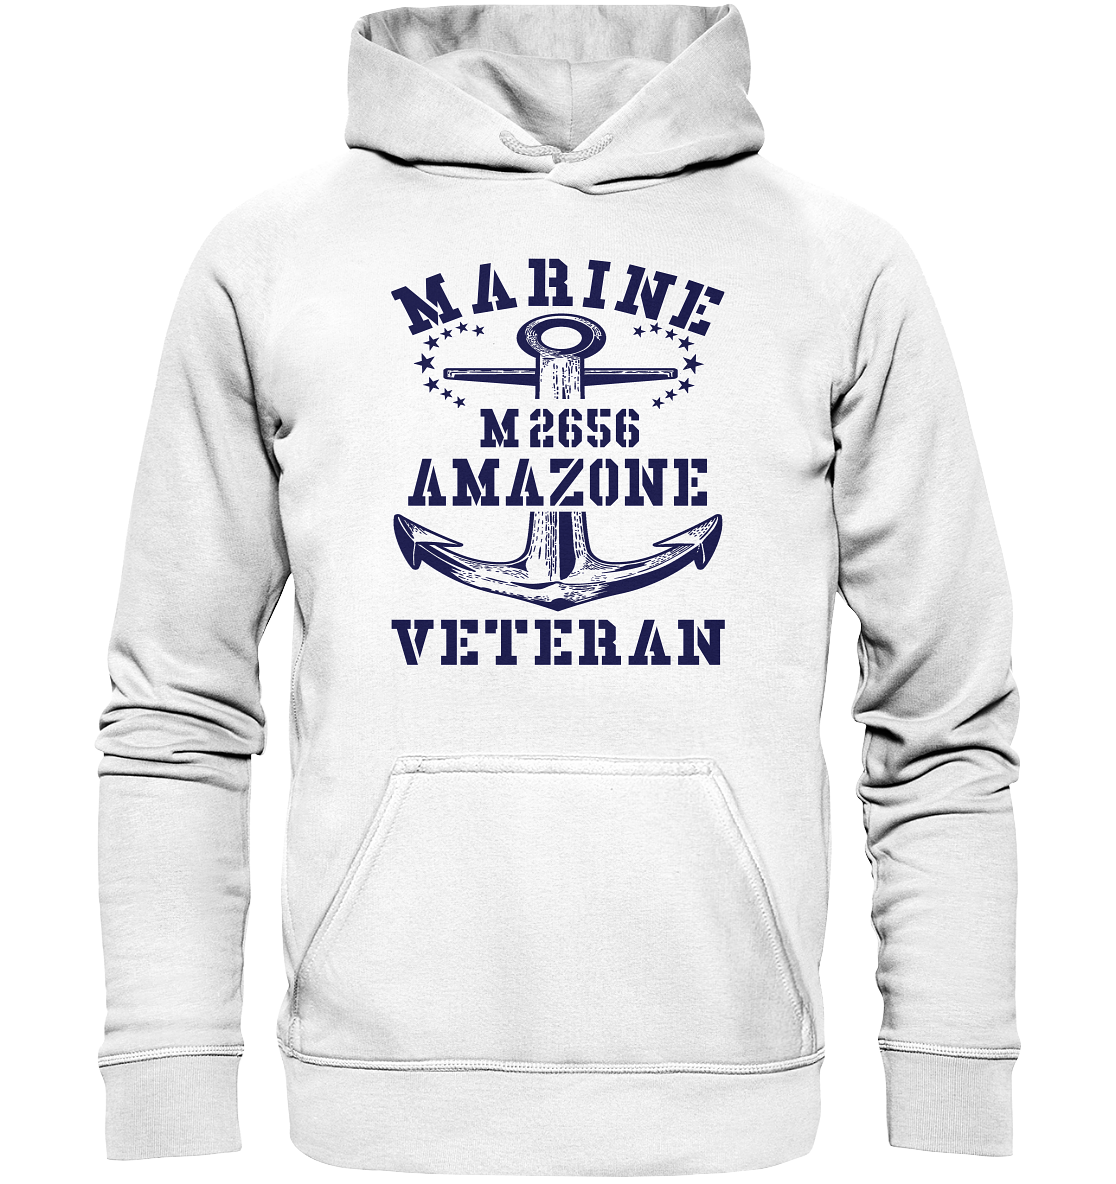 BiMi M2656 AMAZONE Marine Veteran - Basic Unisex Hoodie